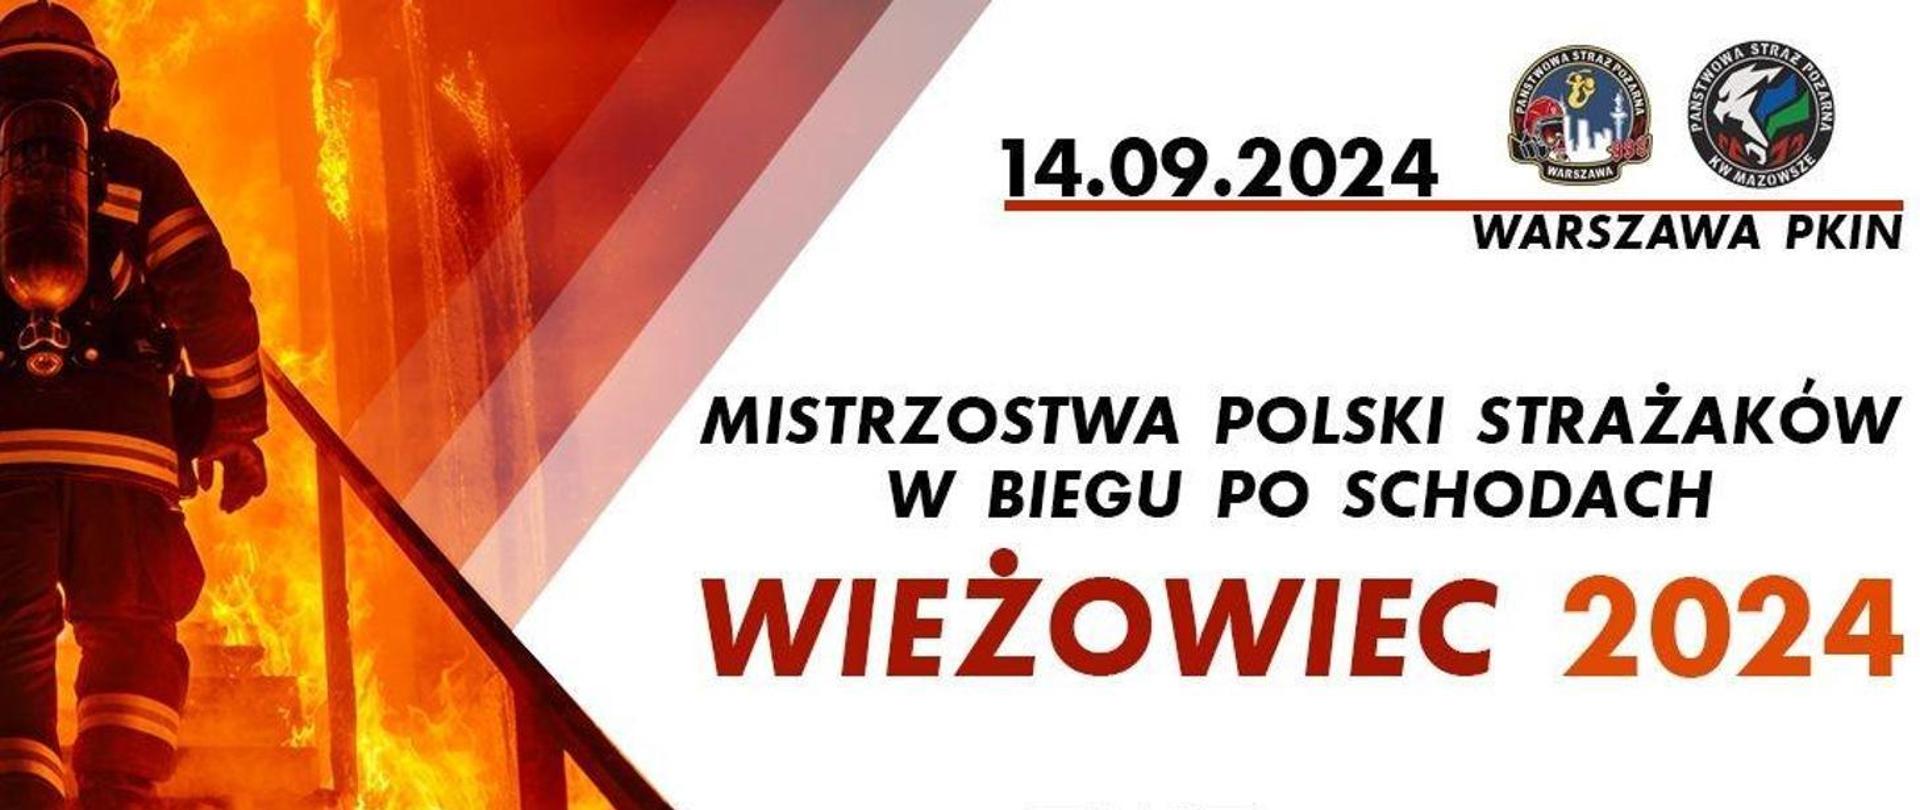 Mistrzostwa Polski Strażaków w Biegu po Schodach